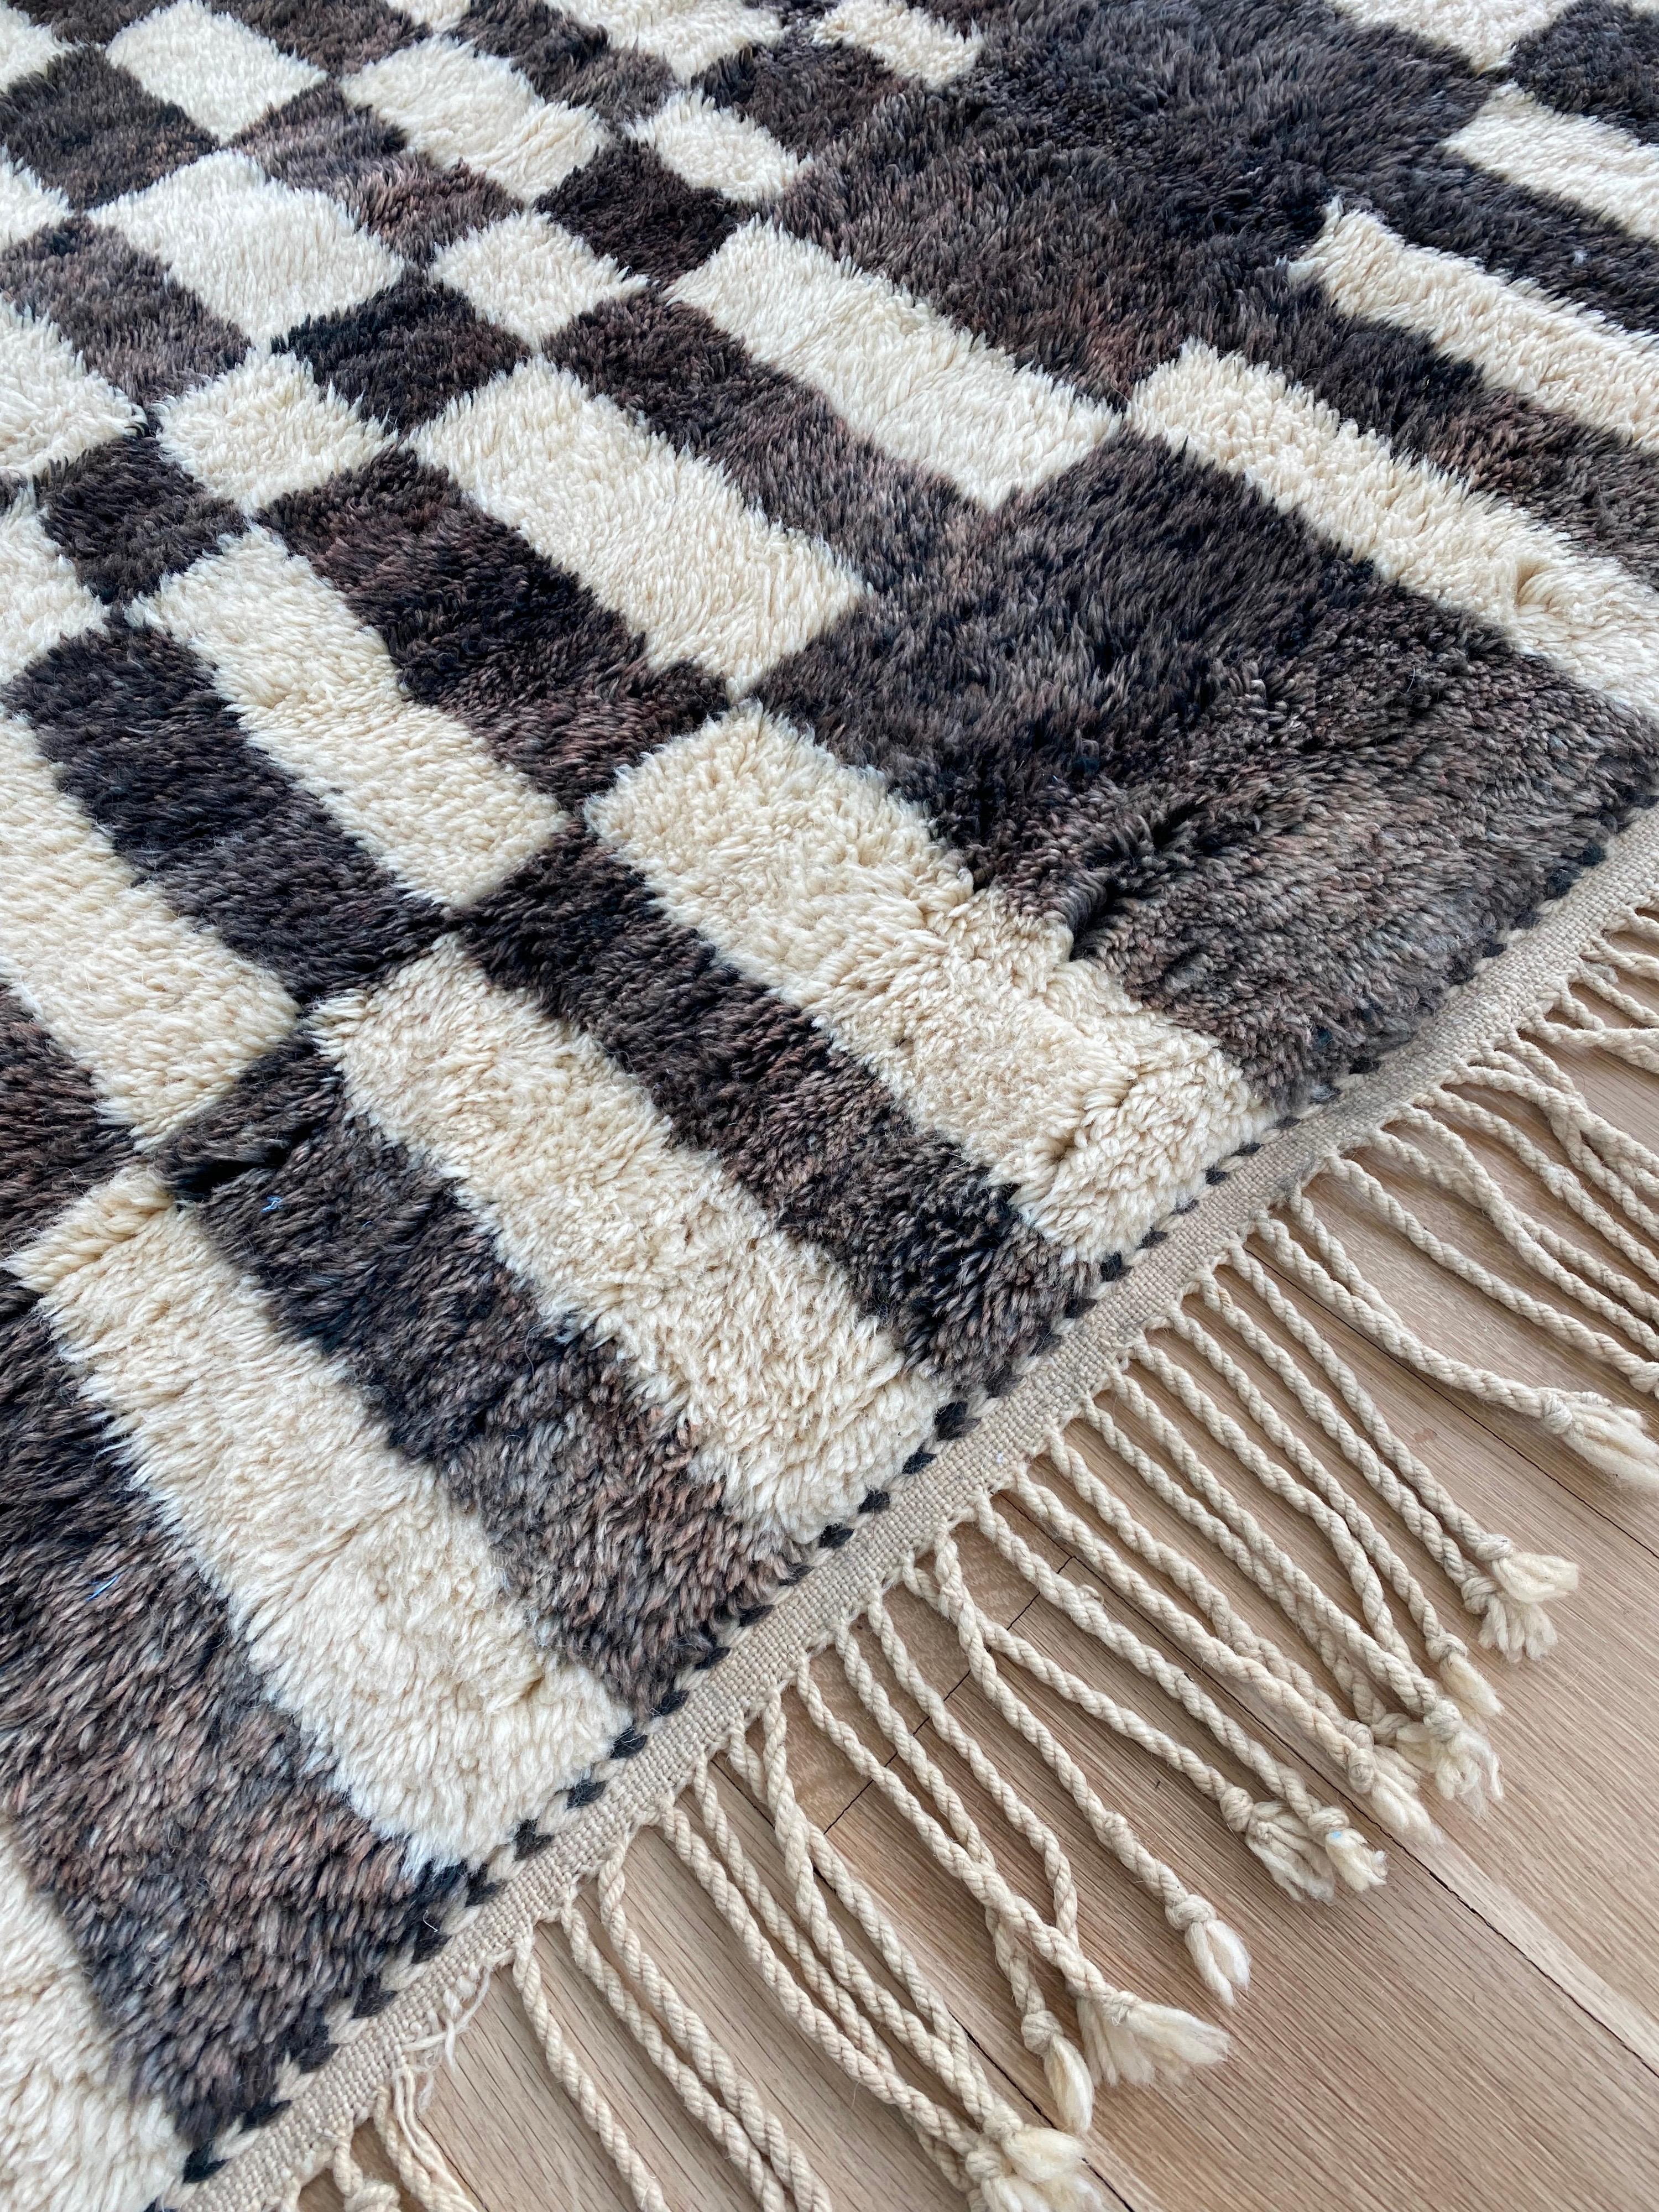 Un tapis marocain vintage Beni Ourain avec un motif en damier intéressant et inhabituel. Merveilleuse couleur noire/chocolat et crème. Les pilotis sont en excellent état et doux au toucher. Les glands d'origine sont intacts avec une tresse tissée à